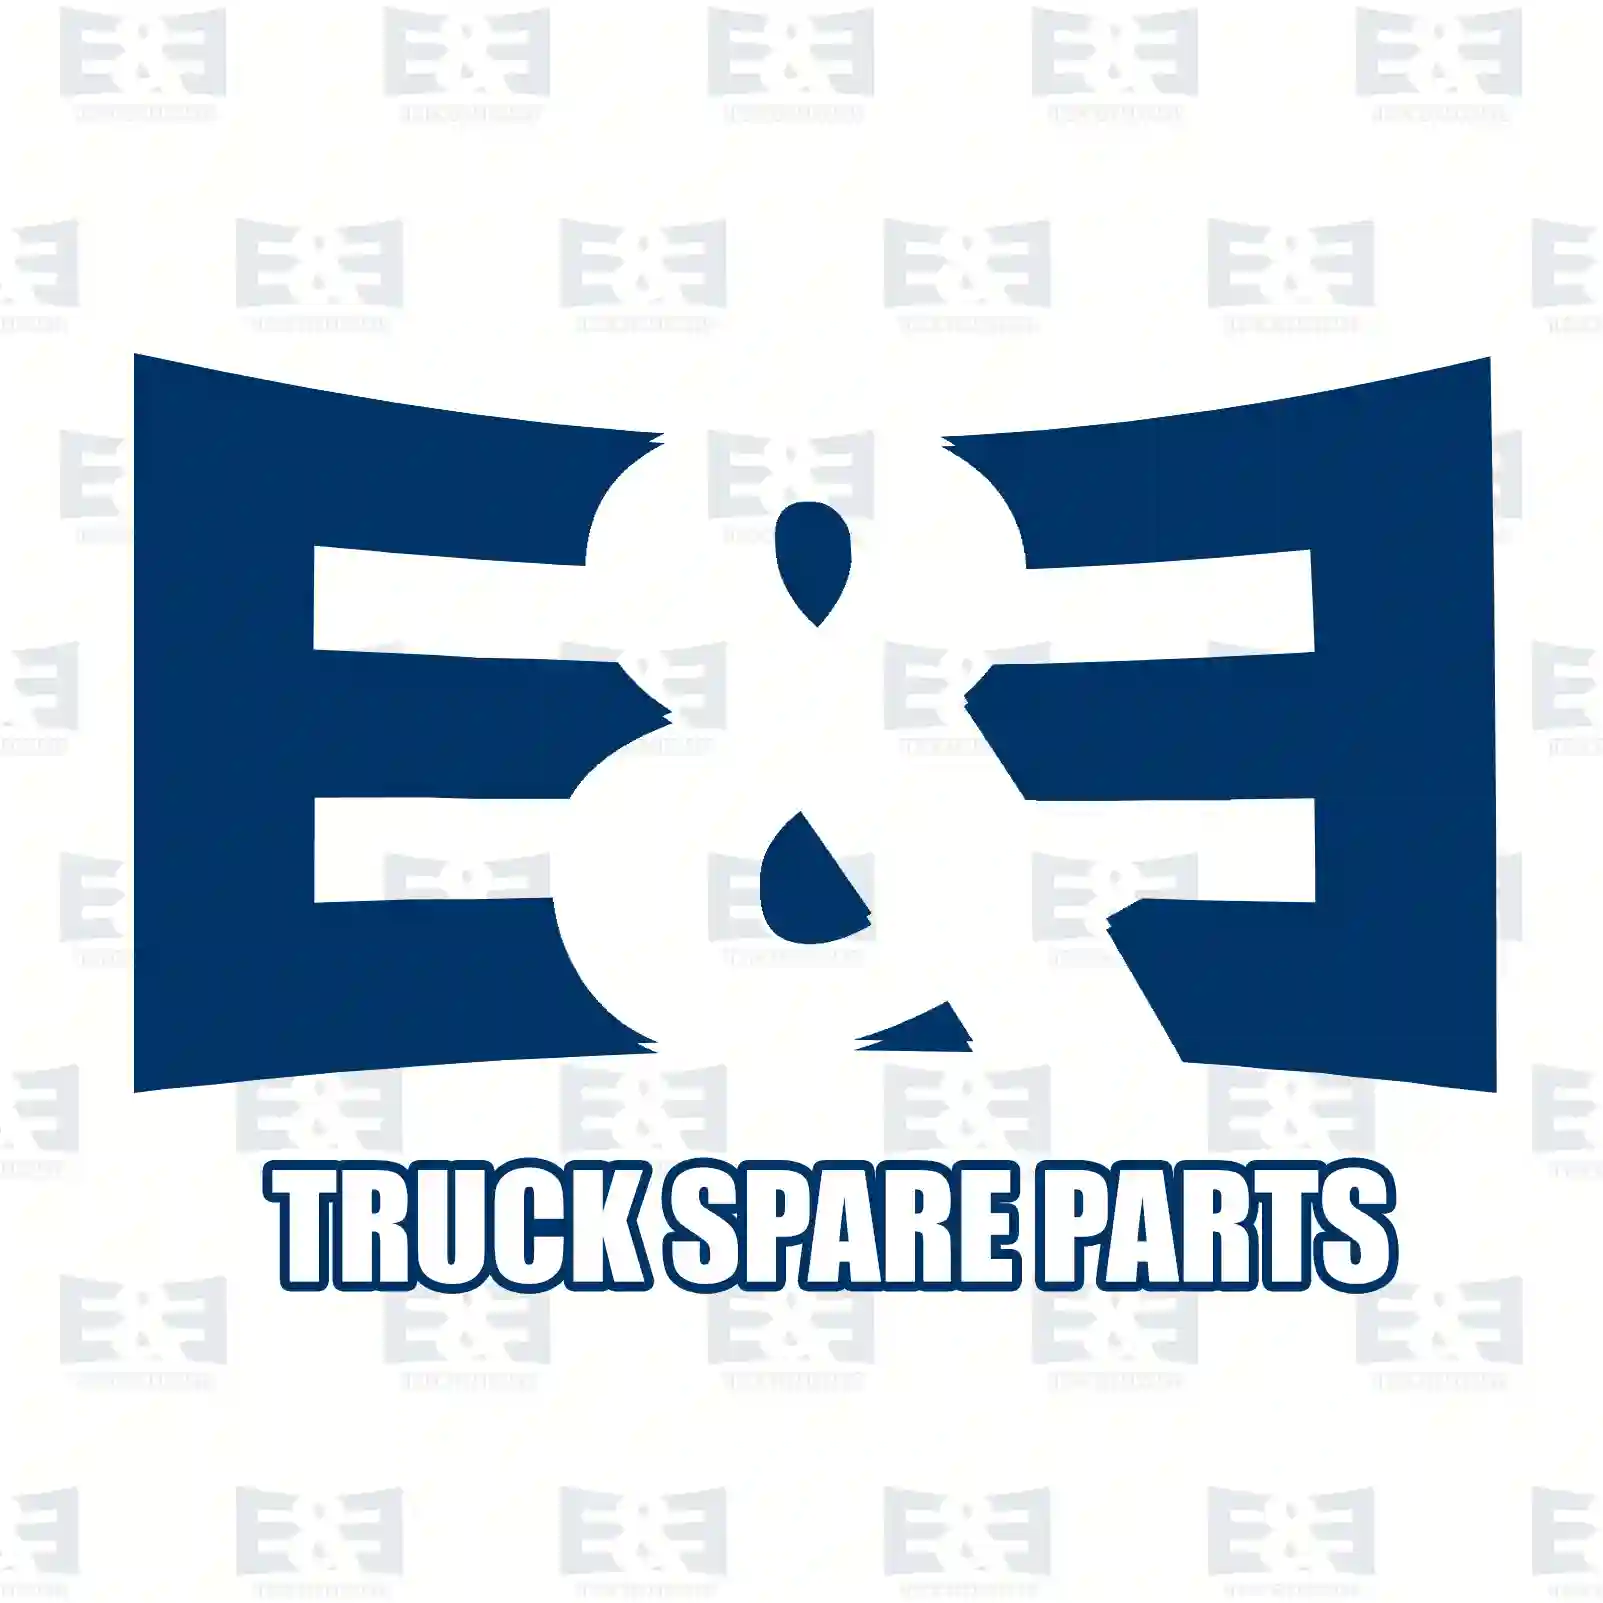 Gear shift joint, 2E2278019, 1669436, 1673695, 20366968, 3191939 ||  2E2278019 E&E Truck Spare Parts | Truck Spare Parts, Auotomotive Spare Parts Gear shift joint, 2E2278019, 1669436, 1673695, 20366968, 3191939 ||  2E2278019 E&E Truck Spare Parts | Truck Spare Parts, Auotomotive Spare Parts